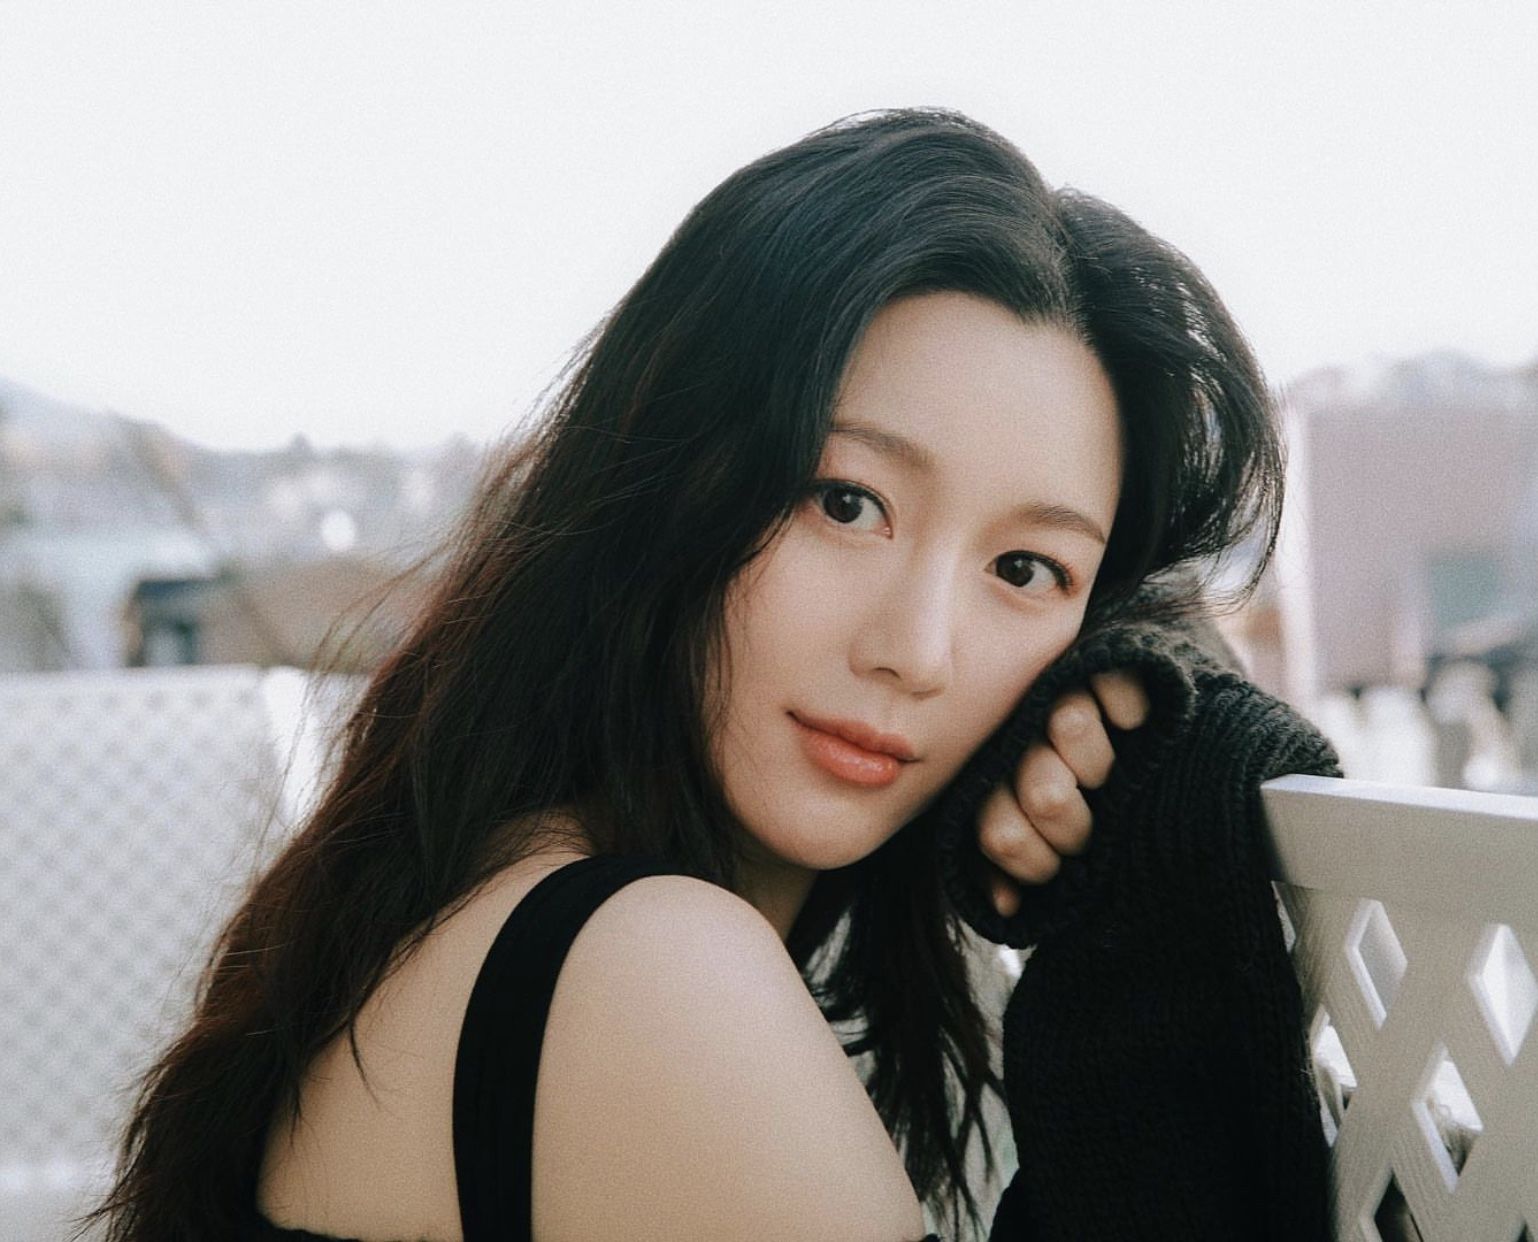 Profil dan Biodata Lee Da In, Calon Istri Lee Seung Gi Lengkap dengan Akun Instagram